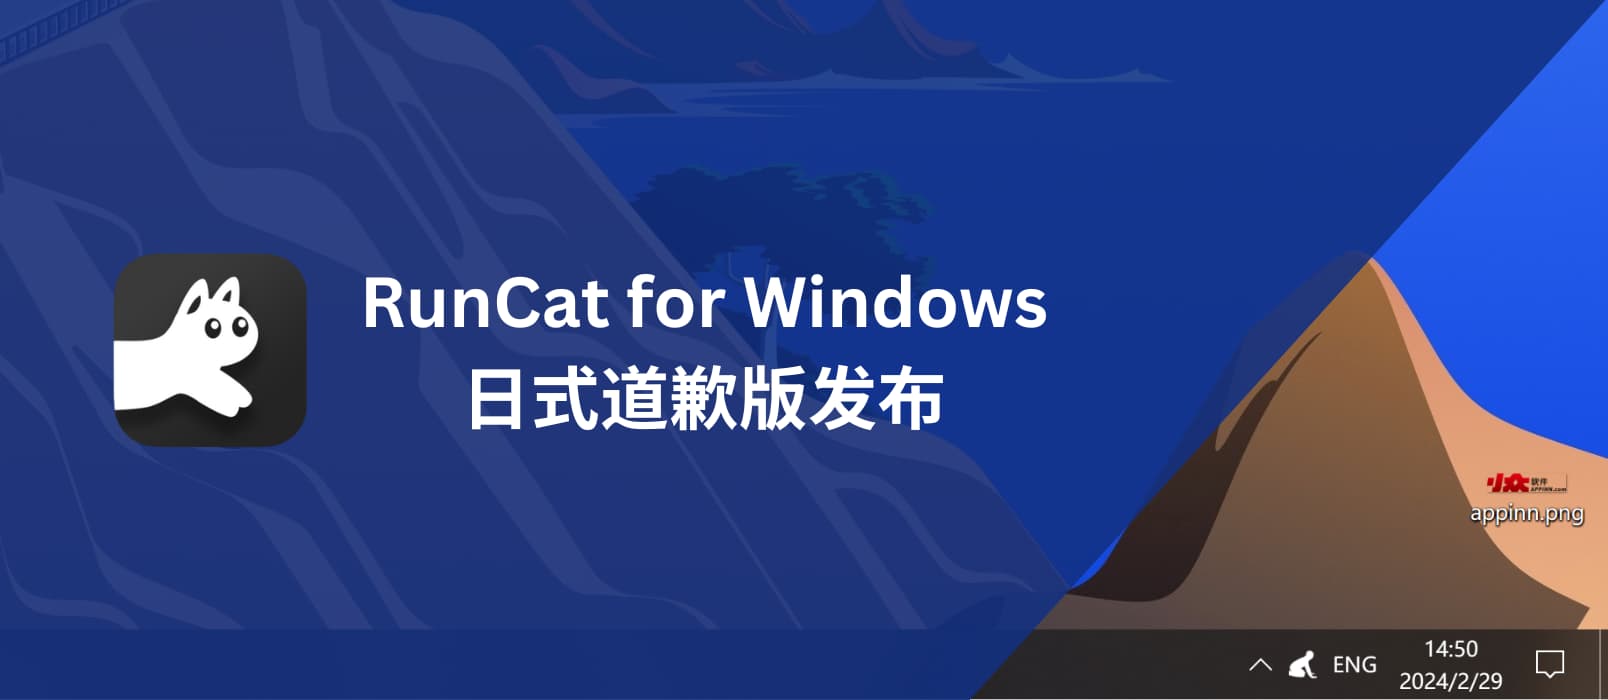 日式道歉版 RunCat for Windows 发布 1